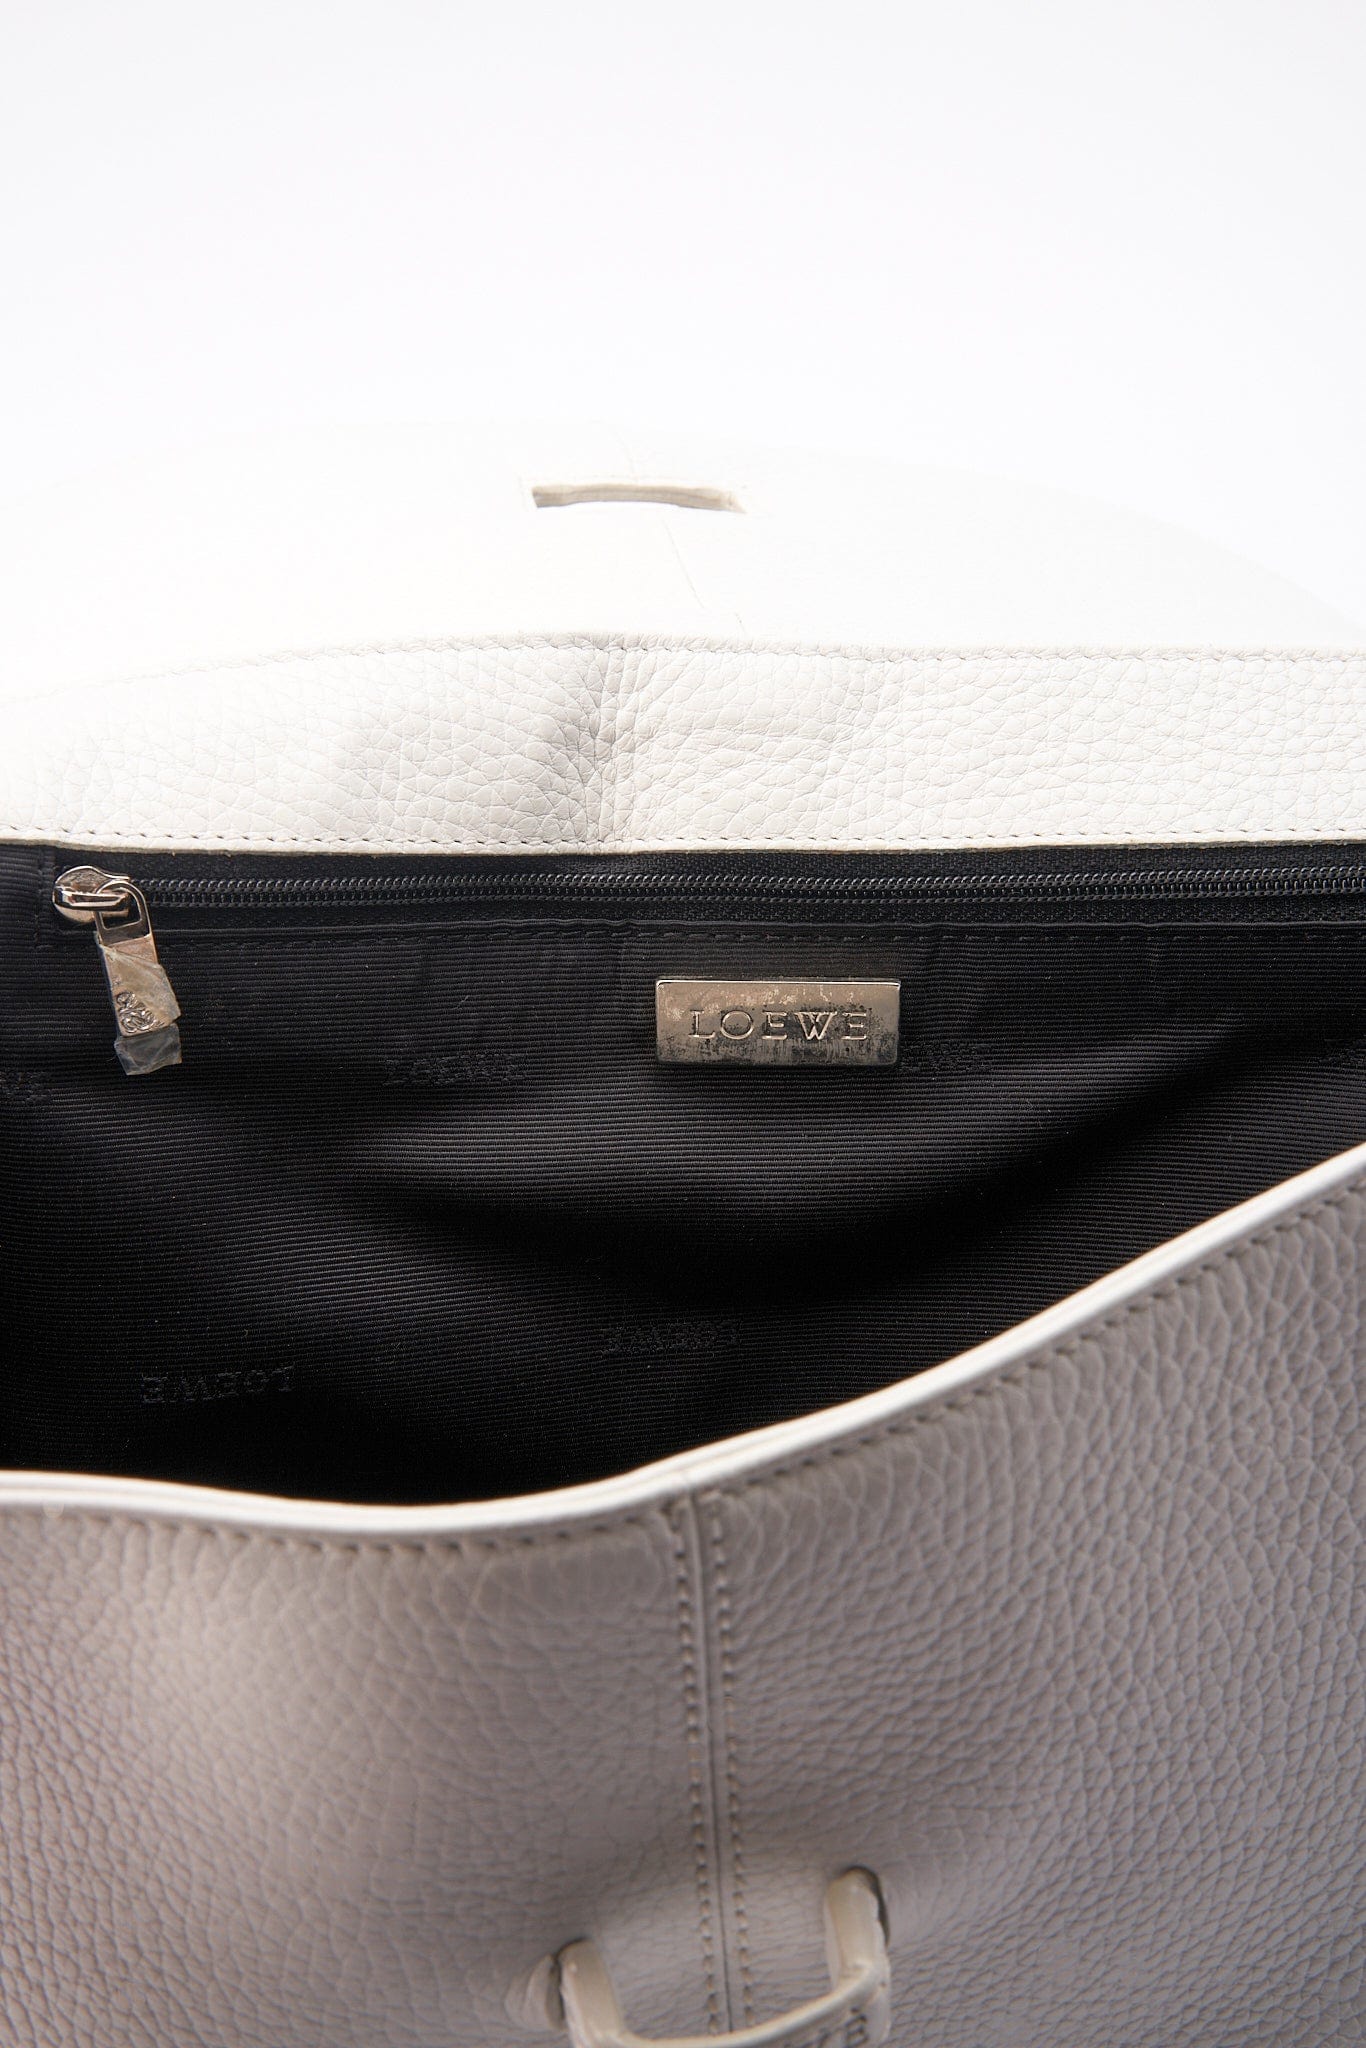 Vintage Loewe White Leather Shoulder Bag